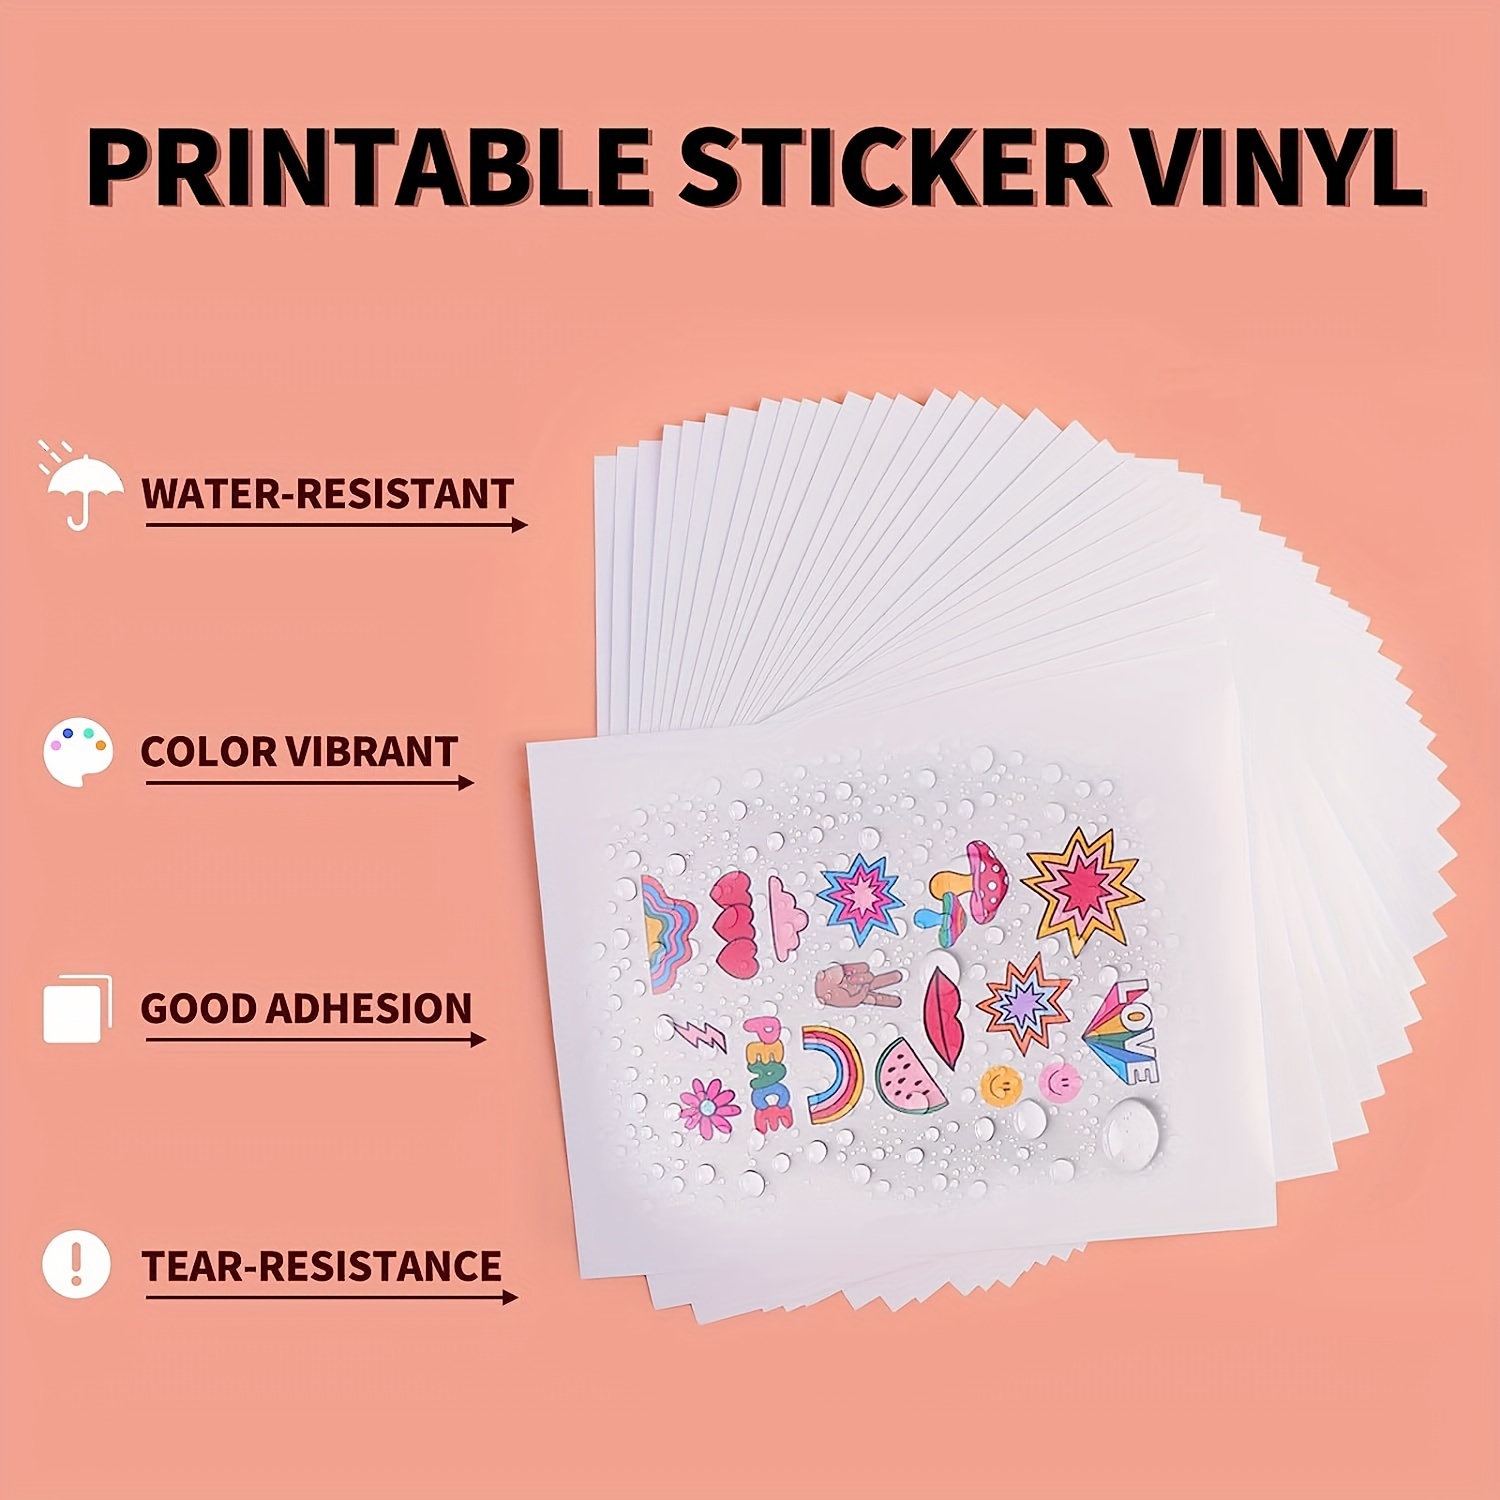  8.5x11 Sticker Paper - Printable - Matte White - 30 Sheets